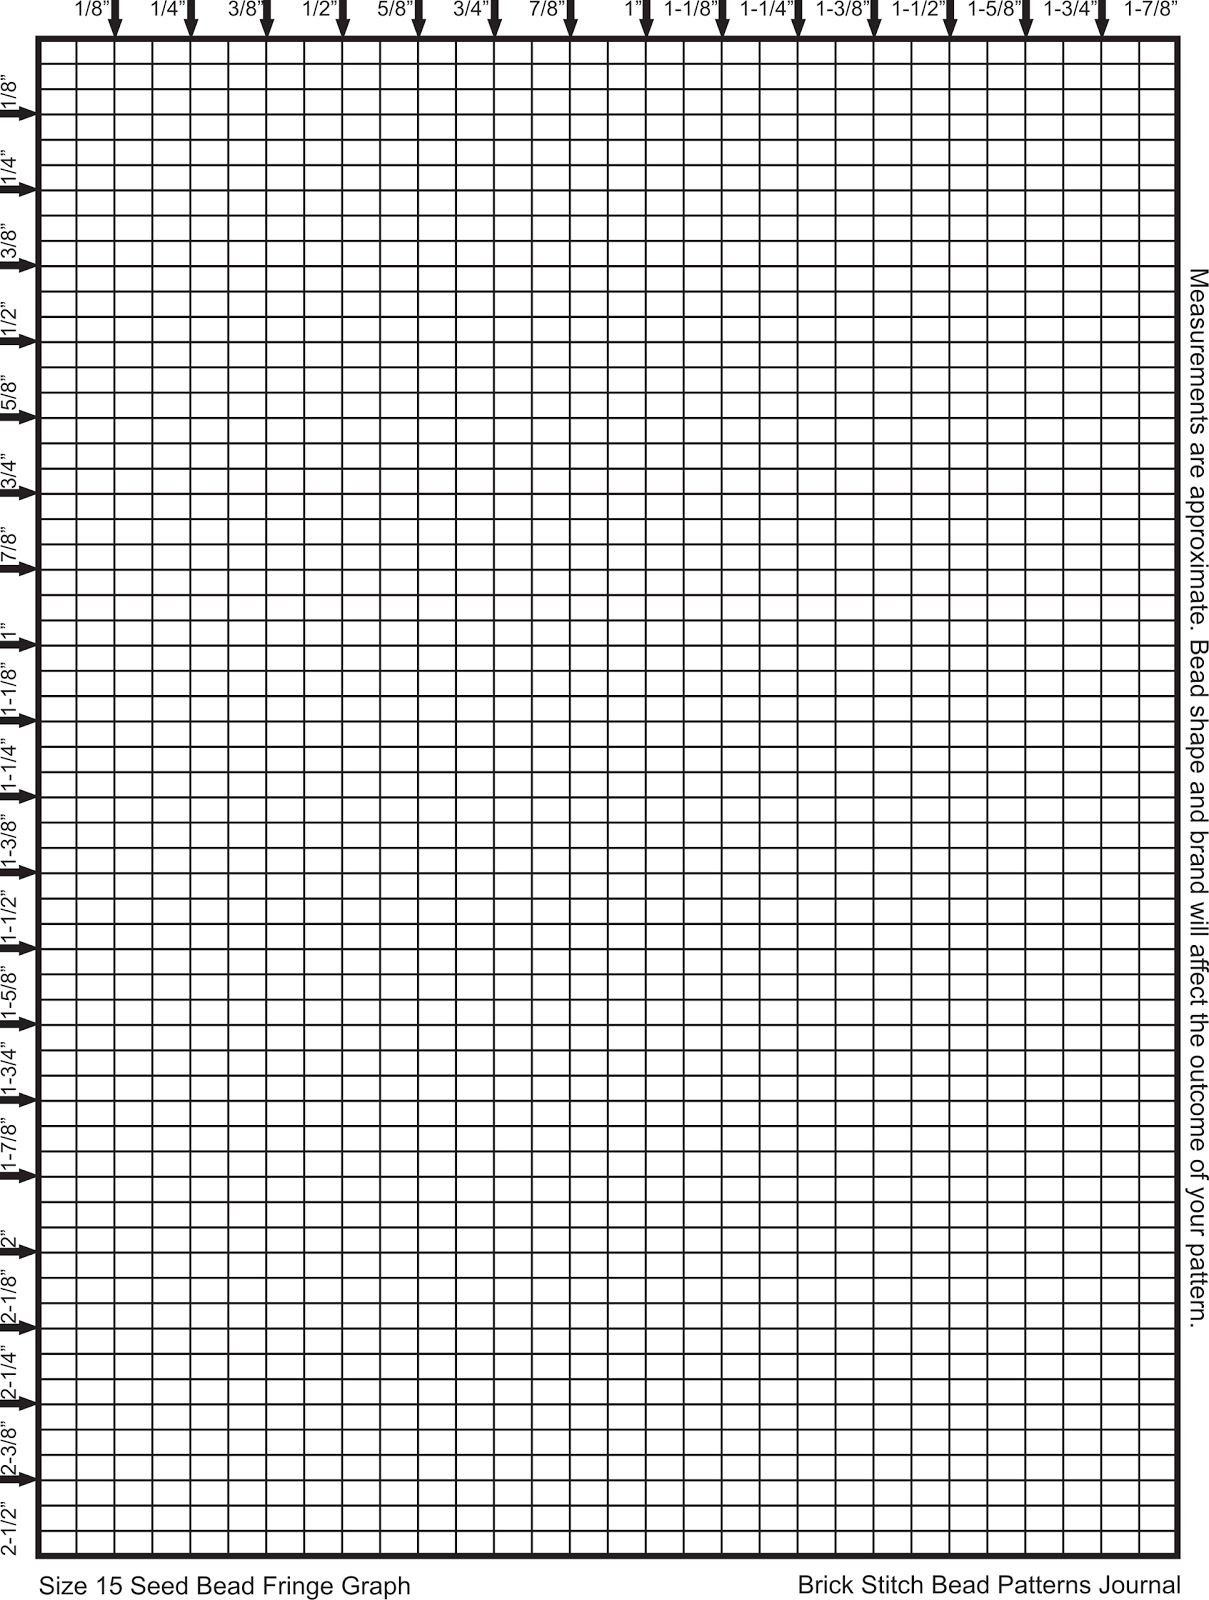 Brick Stitch Bead Patterns Journal Size 15 Seed Bead Brick Stitch